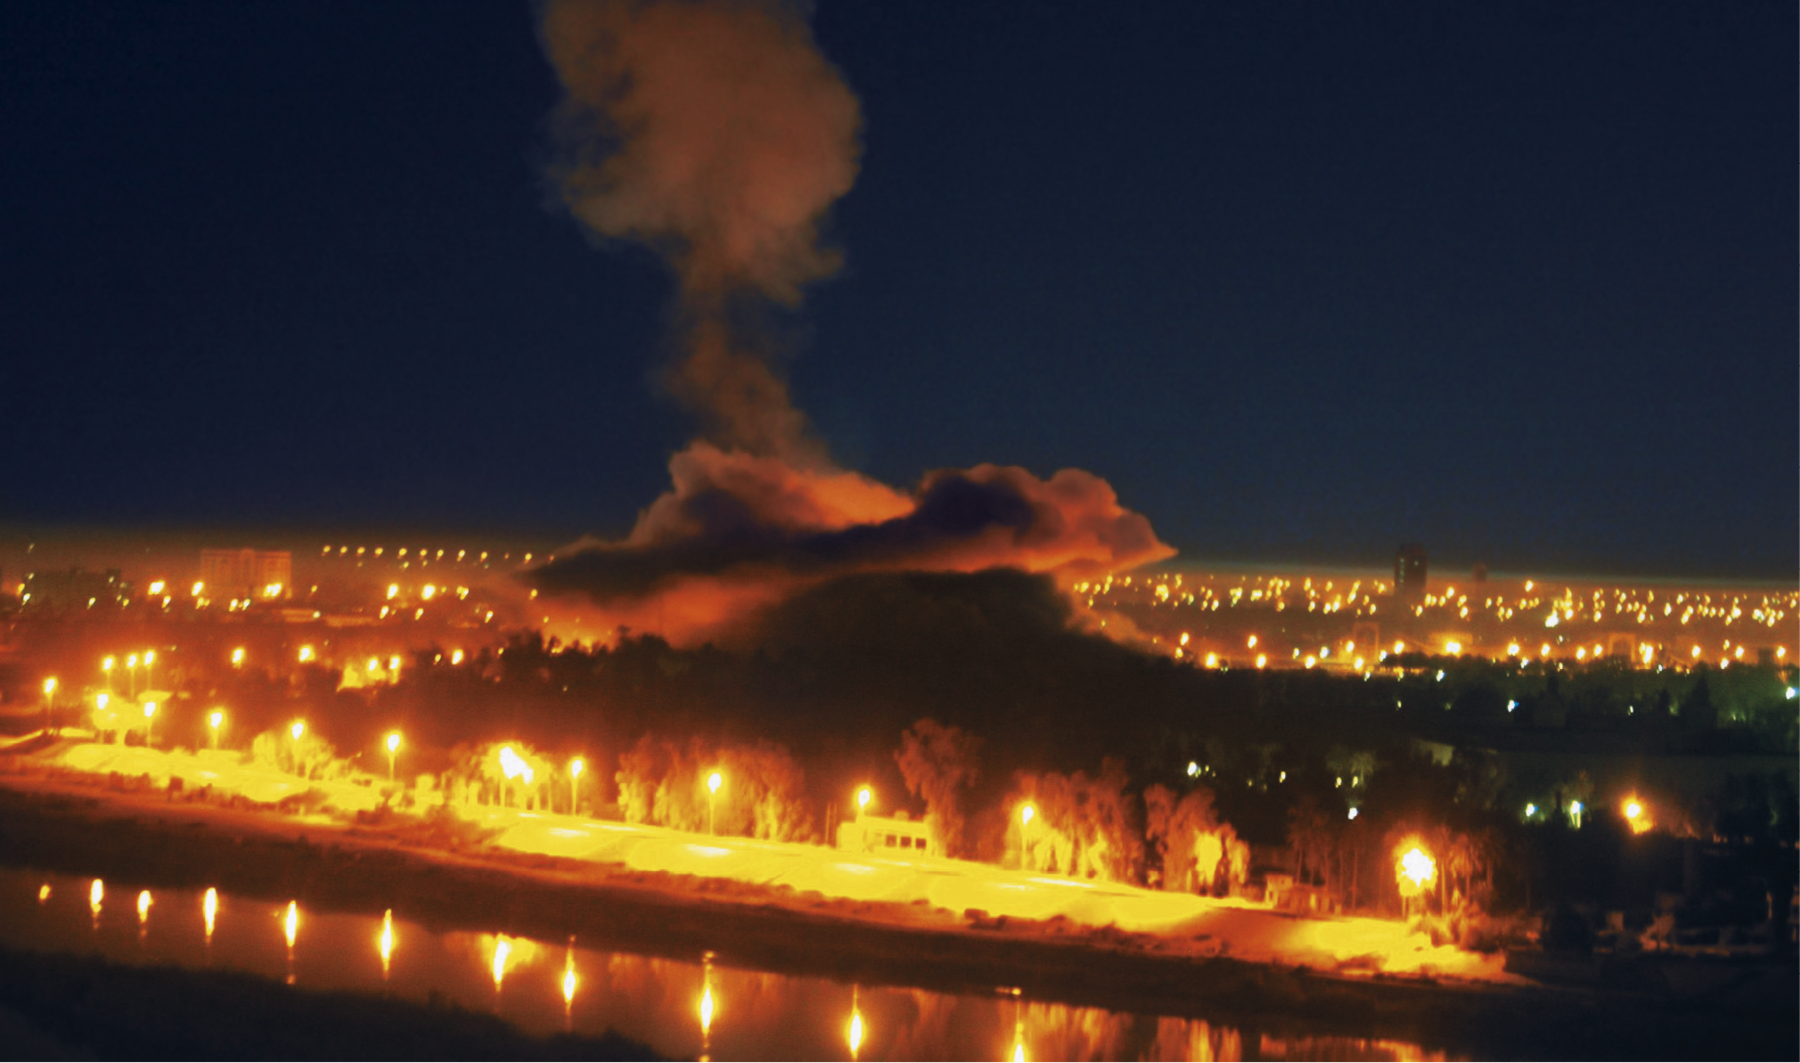 Fotografia. Vista aérea de uma coluna de fumaça alaranjada sobre uma cidade durante a noite. Ao redor há postes de luz e um rio.